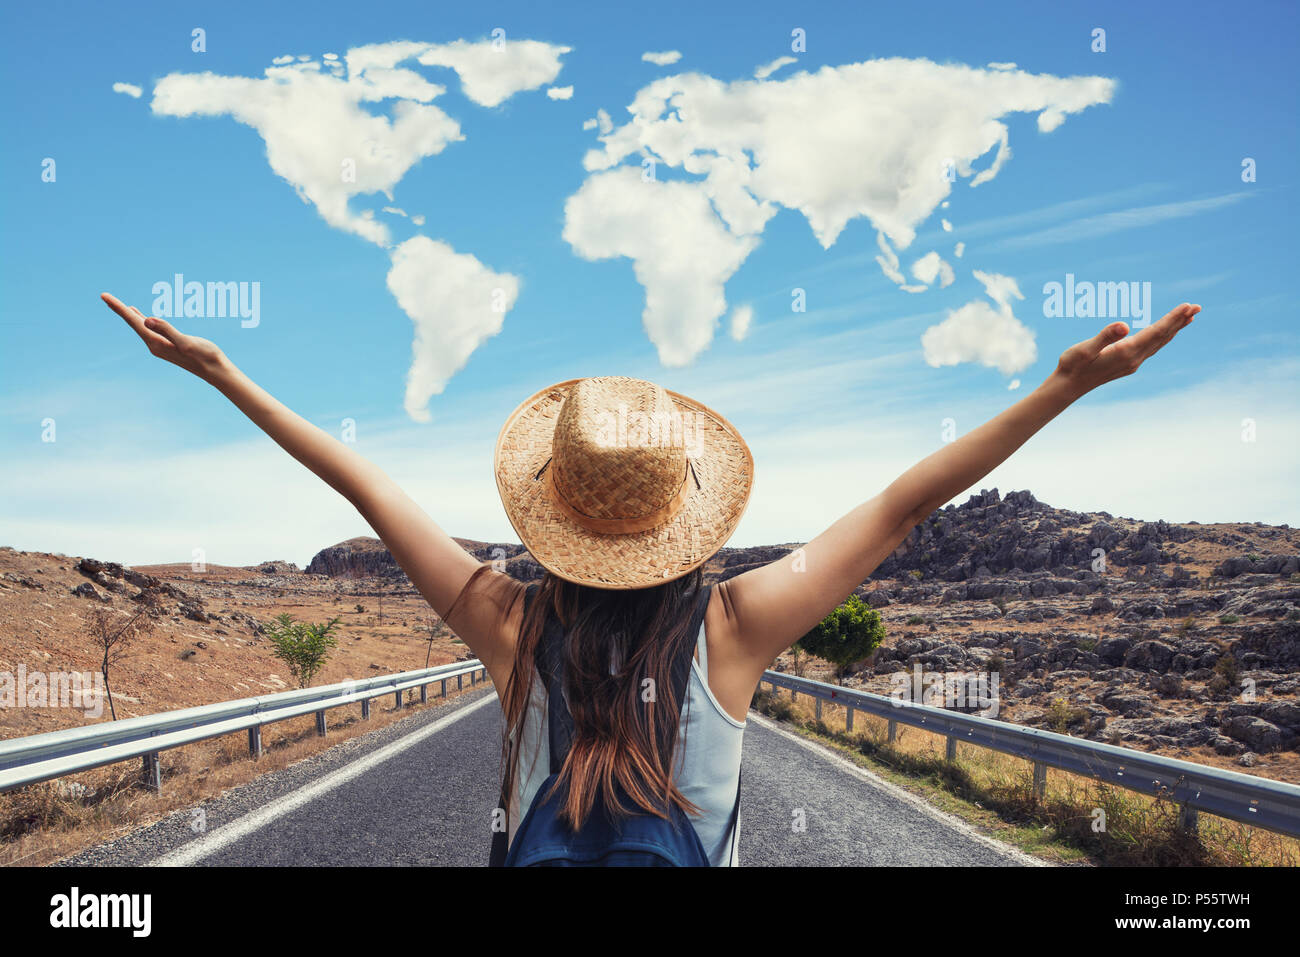 Happy Travel Frau auf Ferienhäuser Konzept mit Welt geformt Wolken. Lustige Reisende ihre Reise geniessen und bereit für Abenteuer Stockfoto